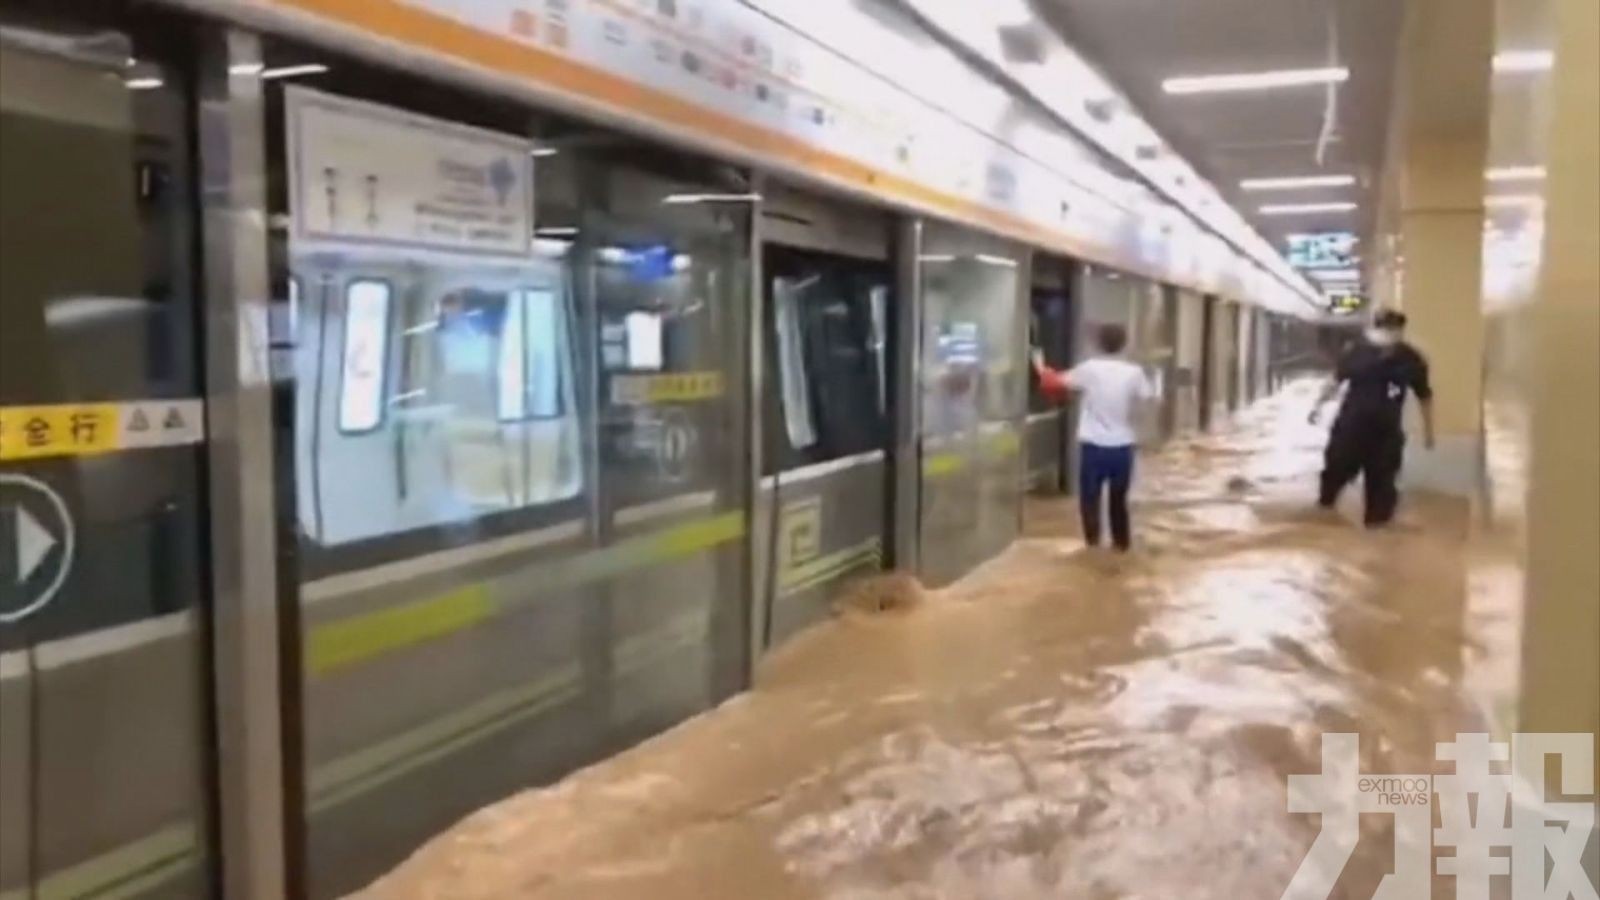 鄭州地鐵積水事件增至14人遇難